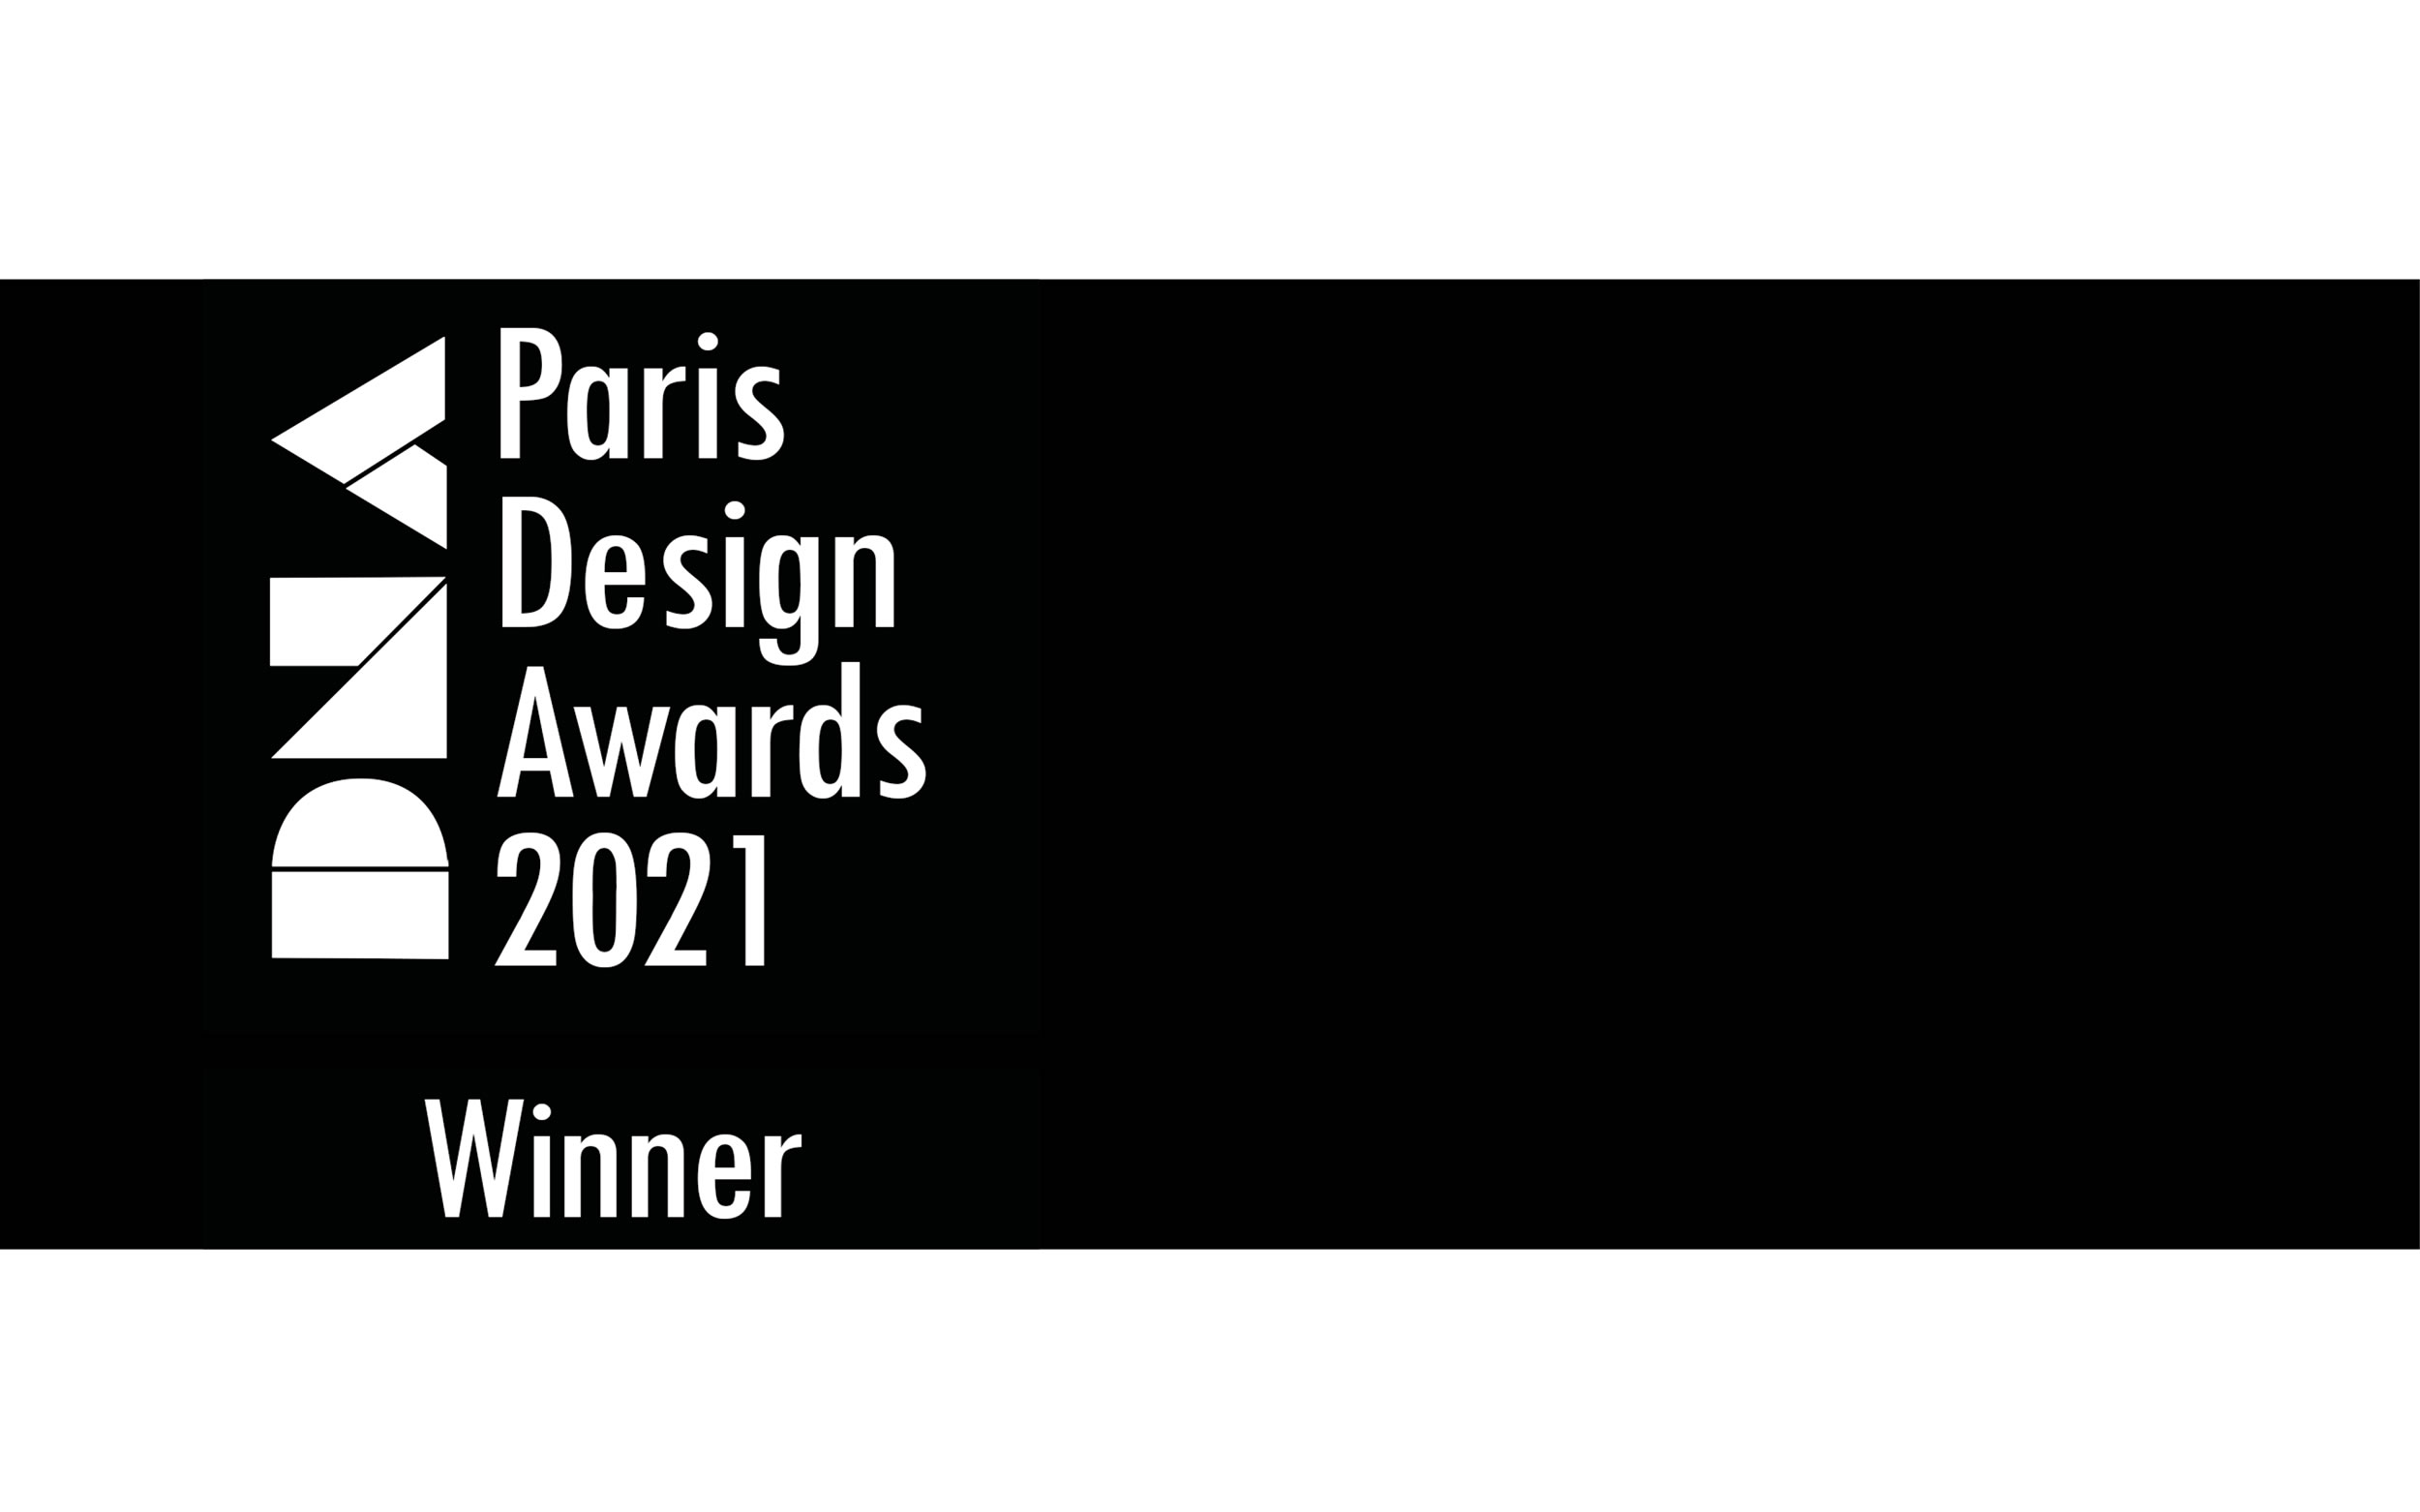 FELIX SCHWAKE WINNER PARIS DESIGN AWARD 2021